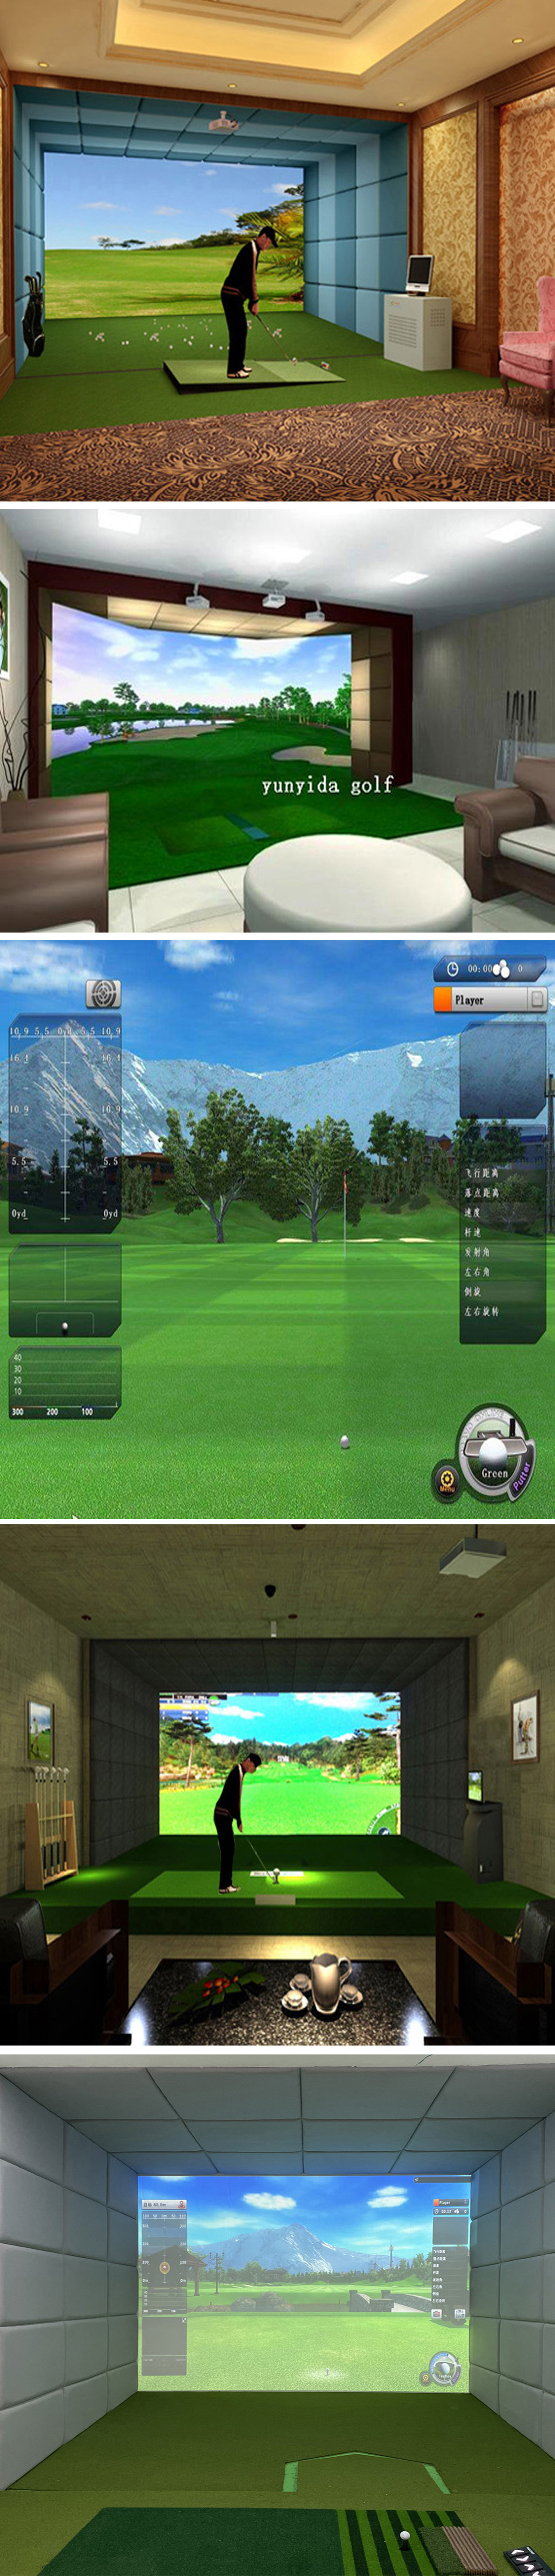 高尔夫模拟设备训练场 四.jpg